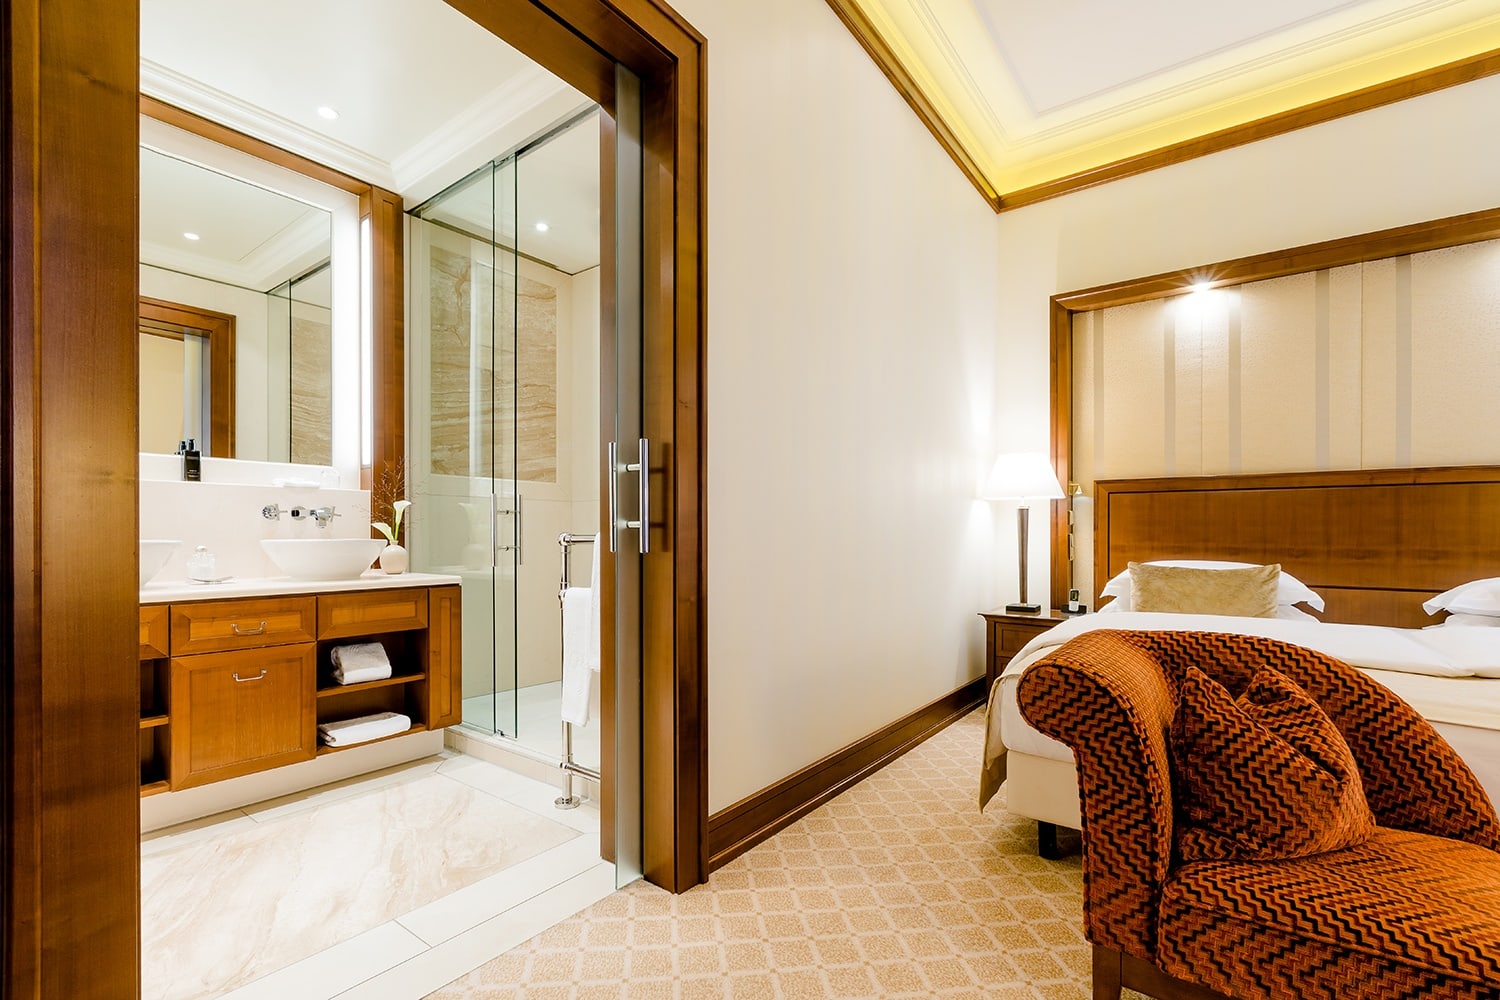 Vor dem Doppelbett in der Hotel Suite Köln befindet sich das Badezimmer mit zwei Waschbecken und großer Dusche